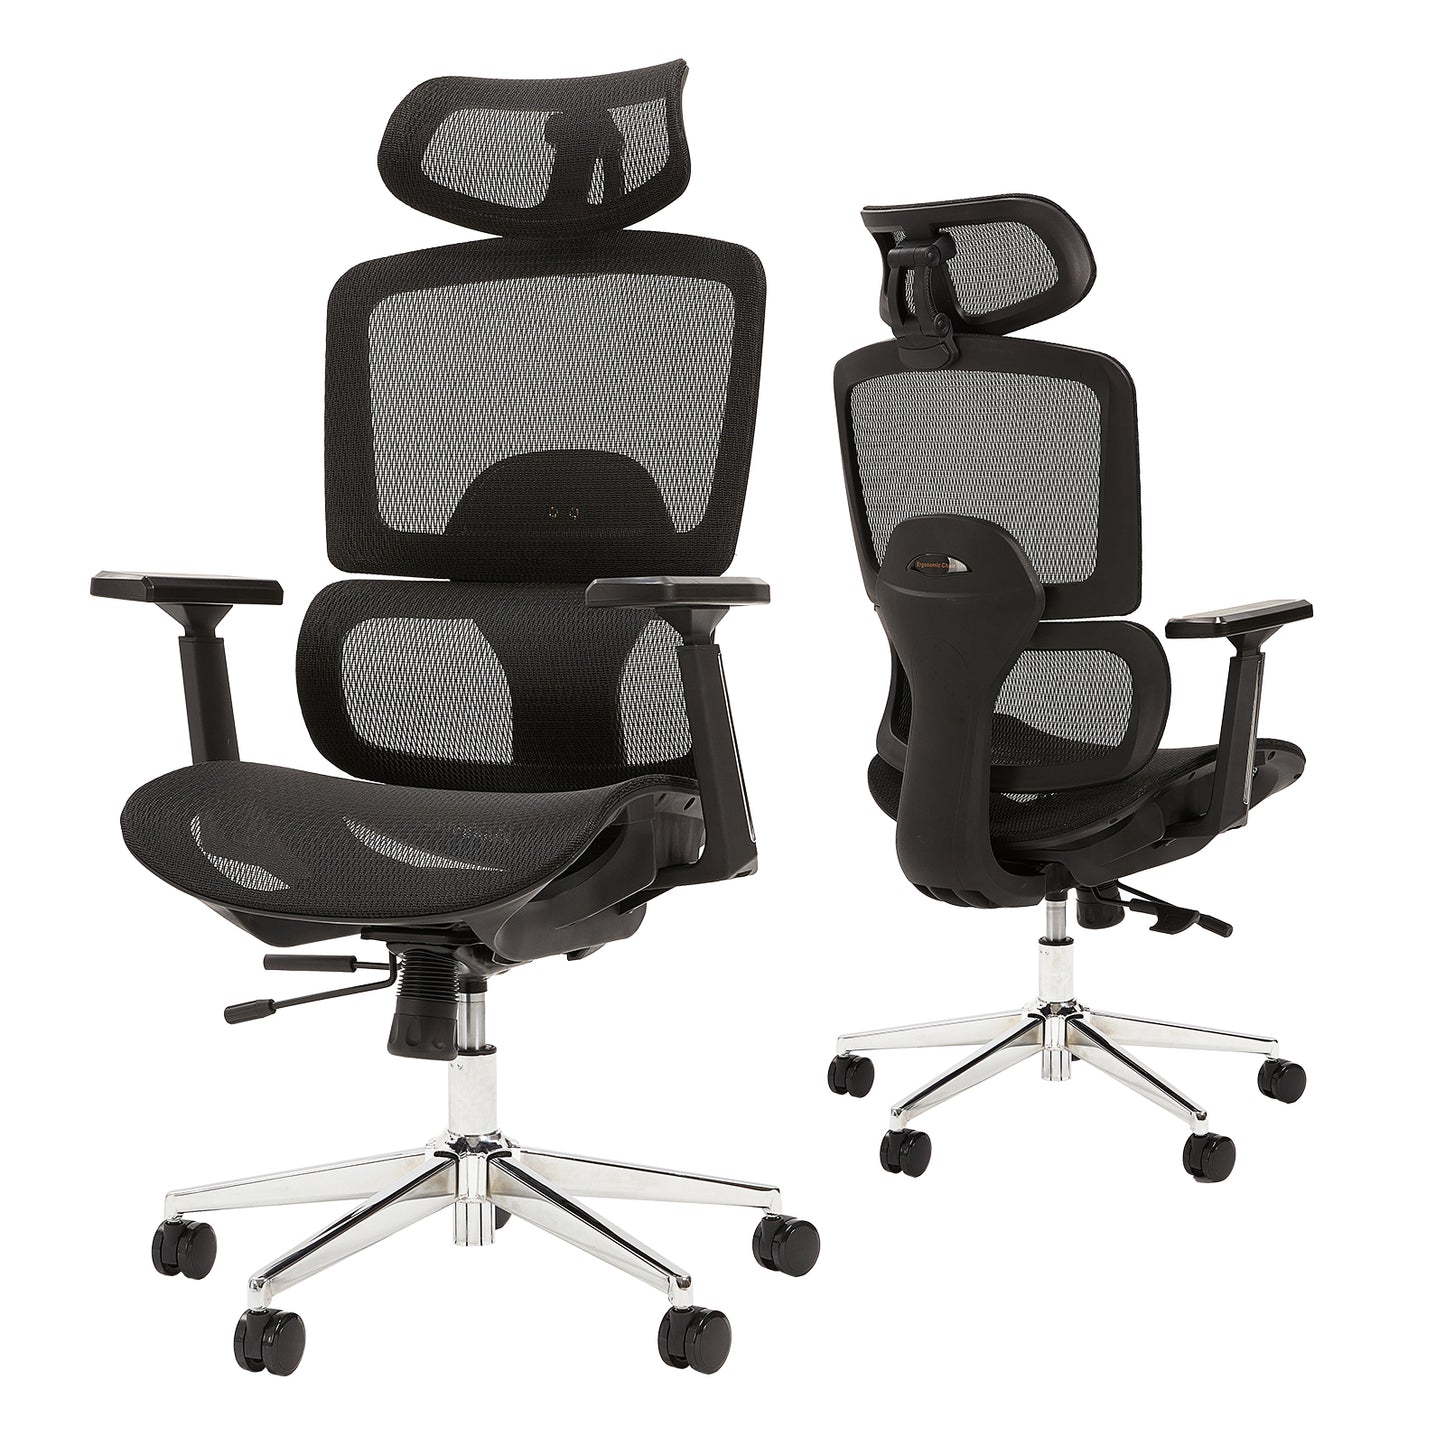 Koorbiir T77A Ergonomic Office Chair